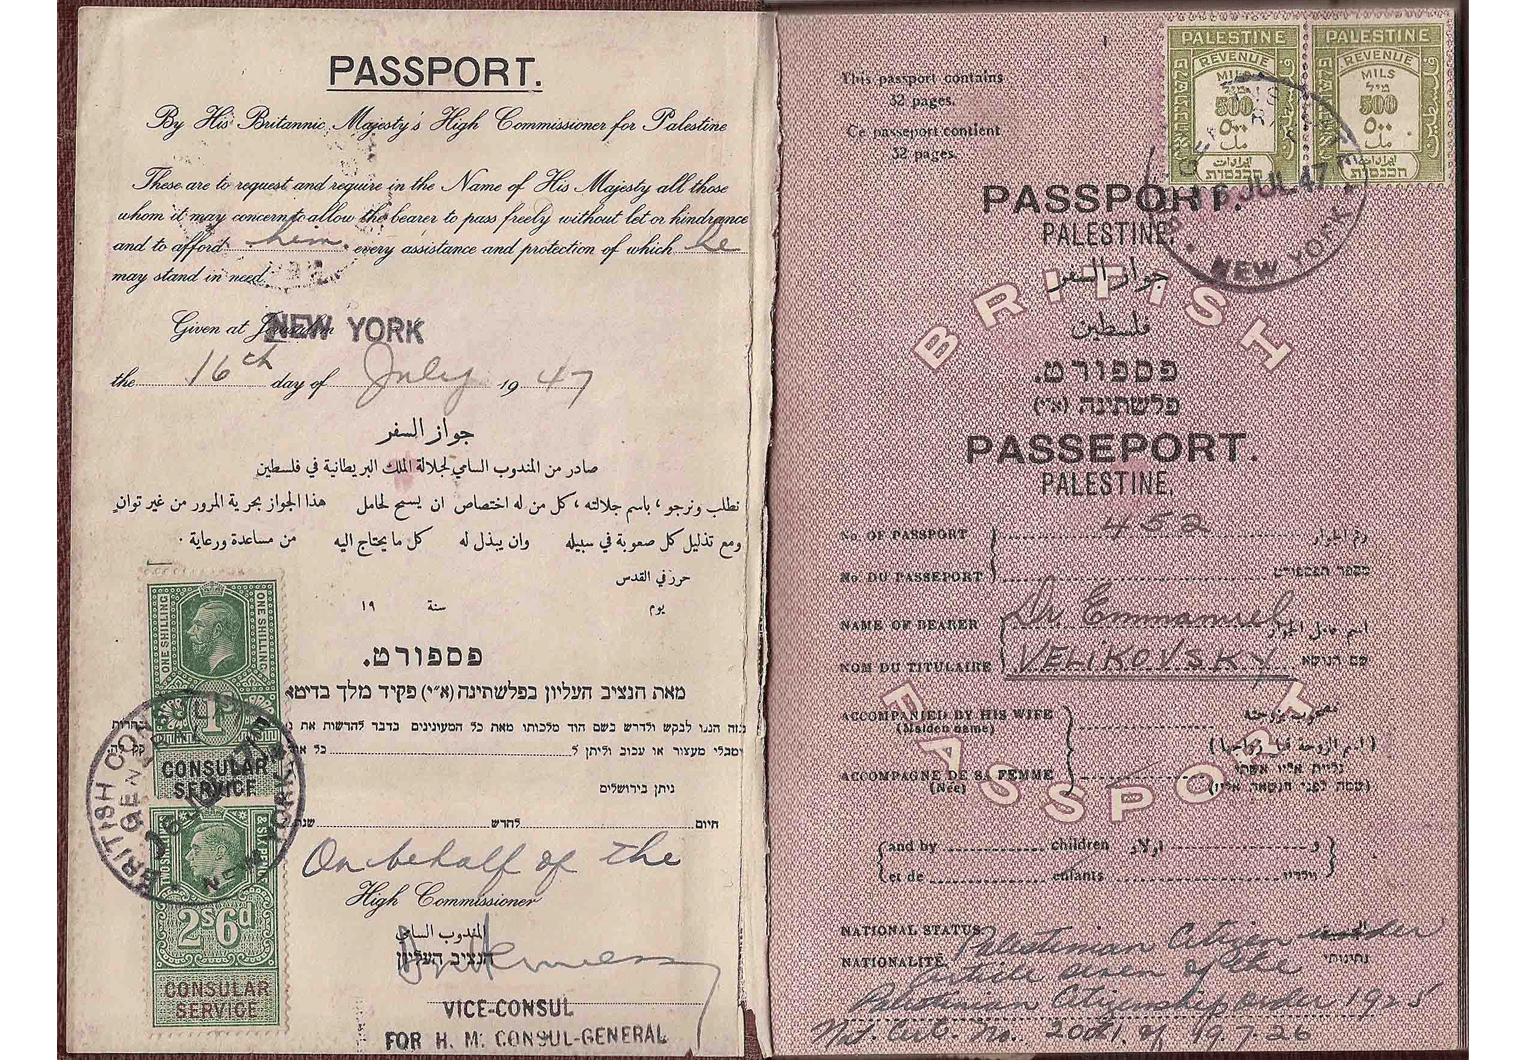 Dr. Immanuel Velikovsky's passport